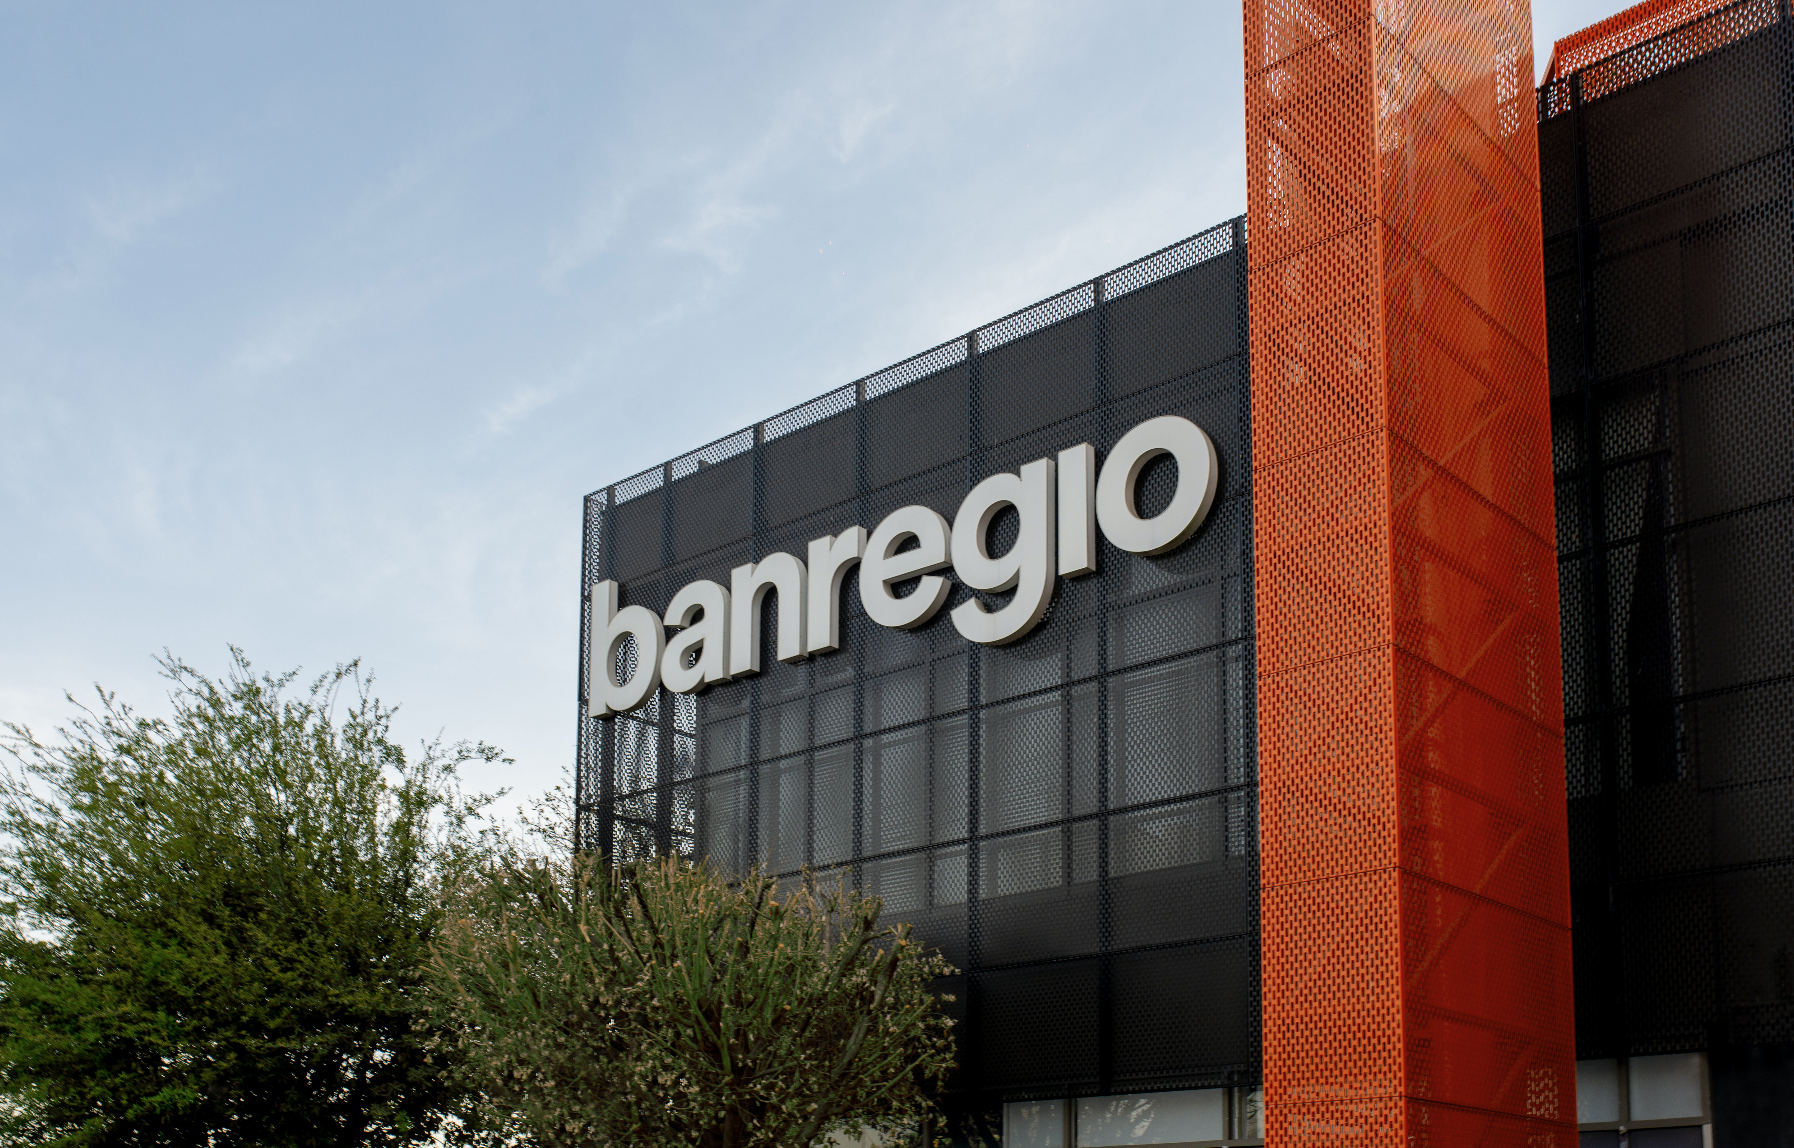 Banregio y Hey Banco rompen los esquemas tradicionales y logran un sólido crecimiento